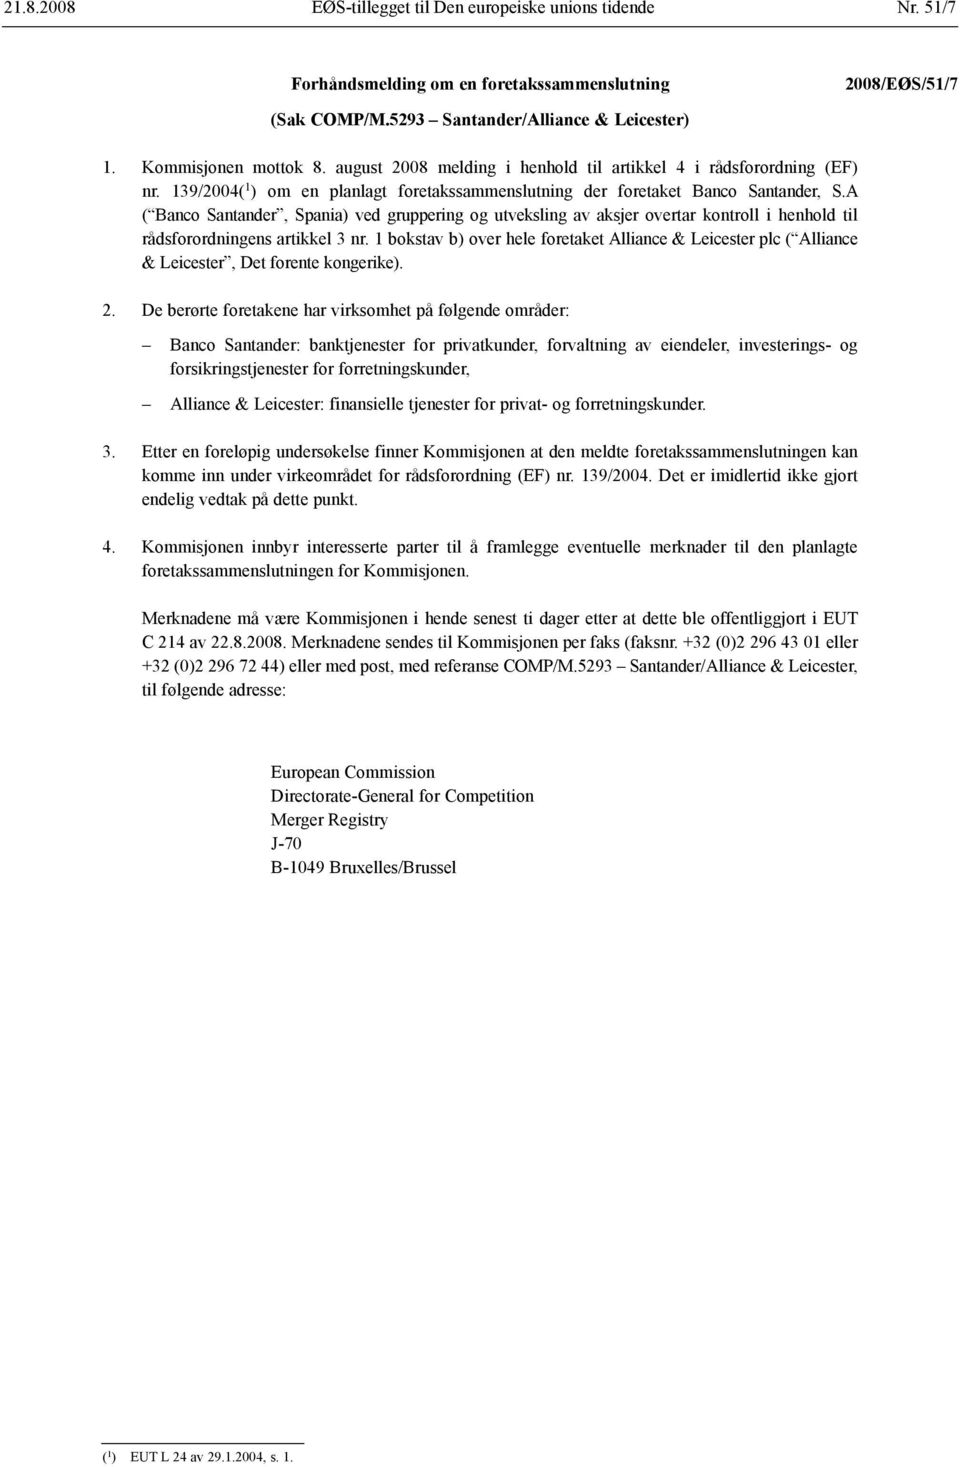 A ( Banco Santander, Spania) ved gruppering og utveksling av aksjer overtar kontroll i henhold til rådsforordningens artikkel 3 nr.